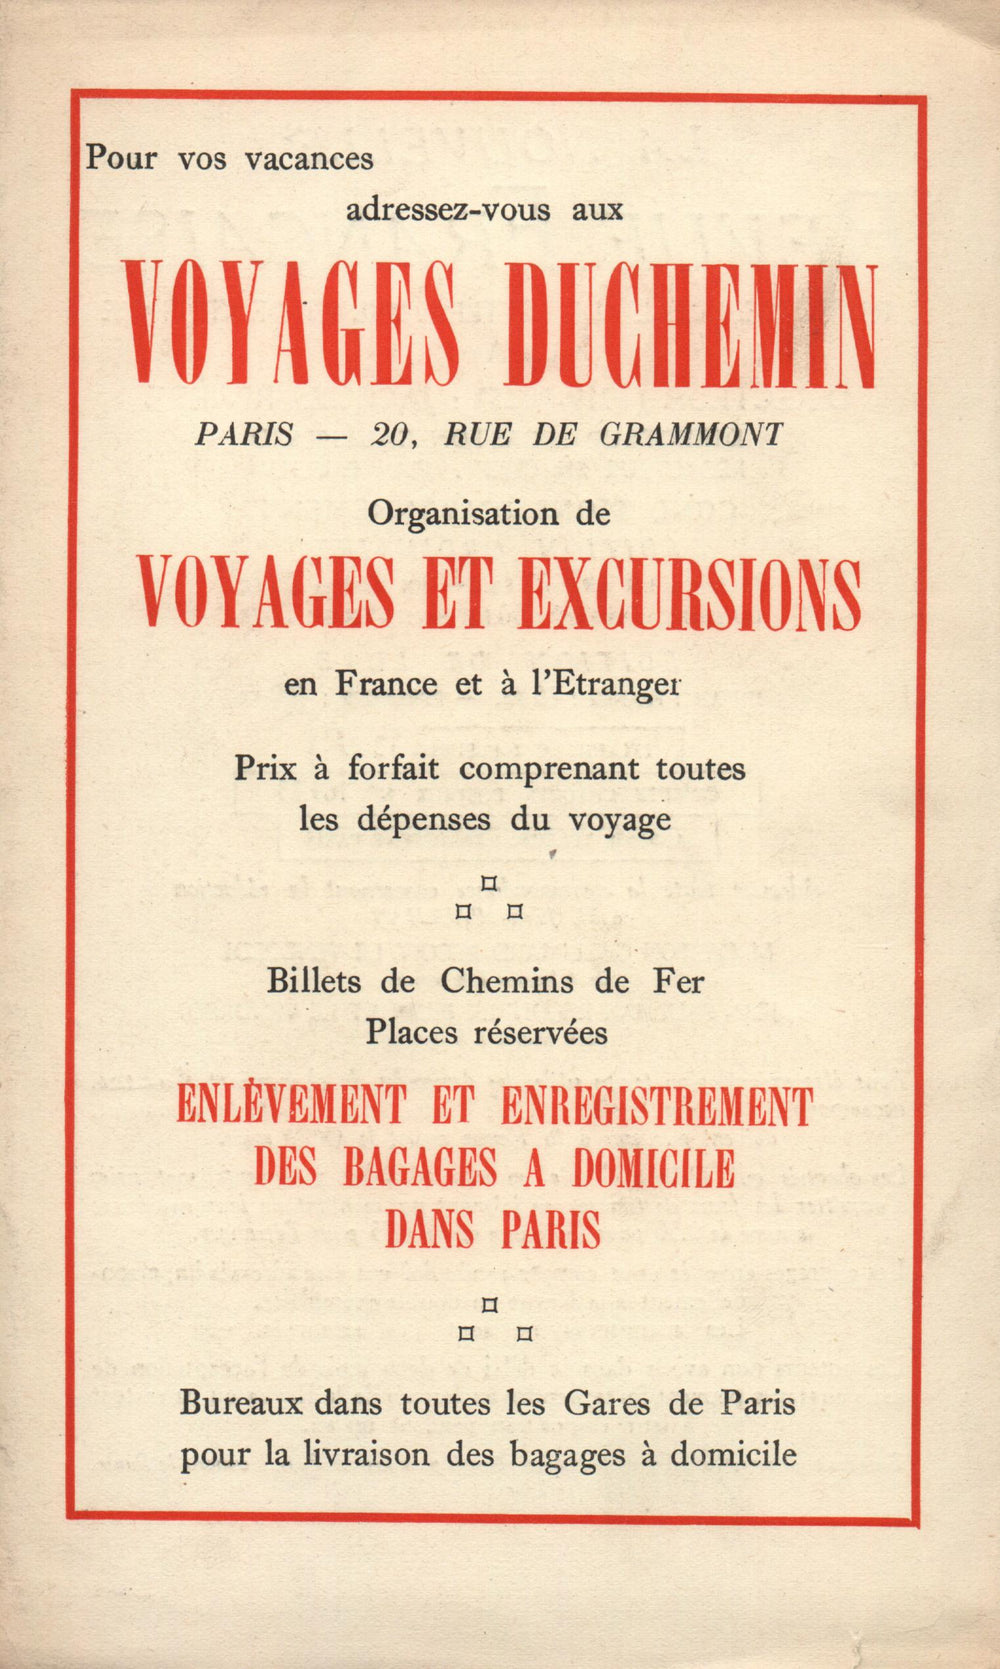 La Nouvelle Revue Française N' 142 (Juillet 1925)